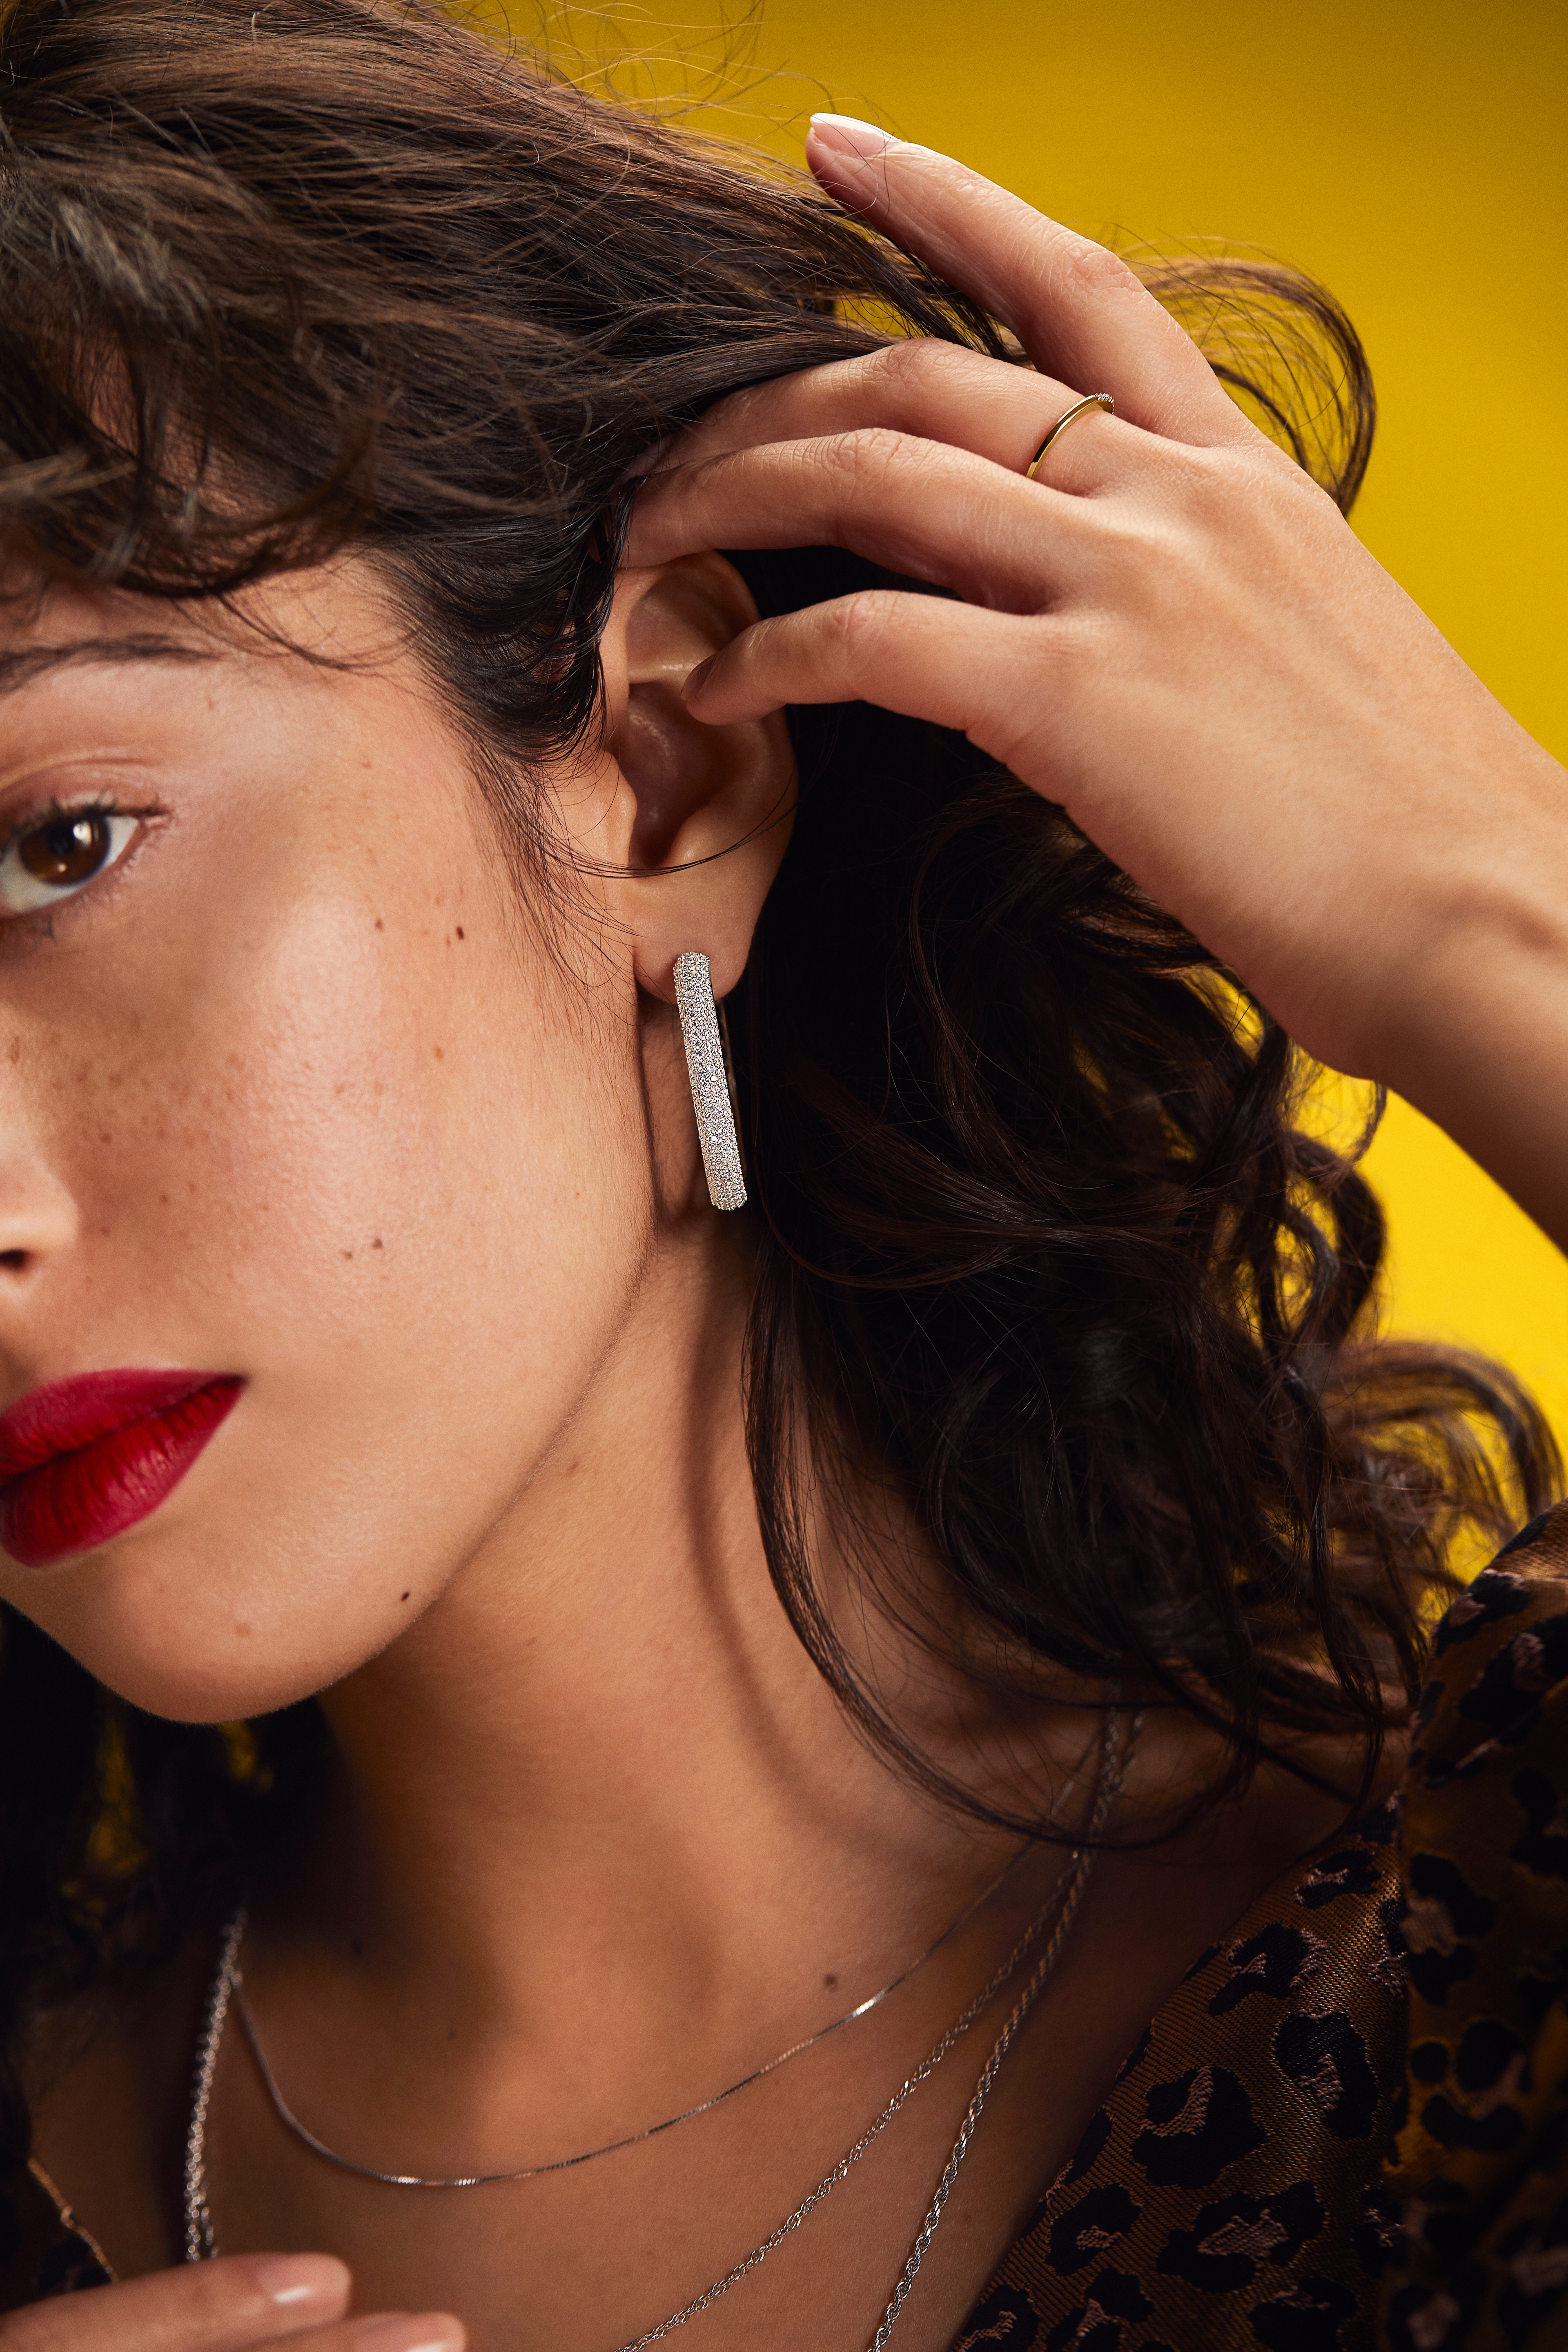 ethnic 18kt gold earrings upper ear earrings barbells piercing jewellry  india | eBay